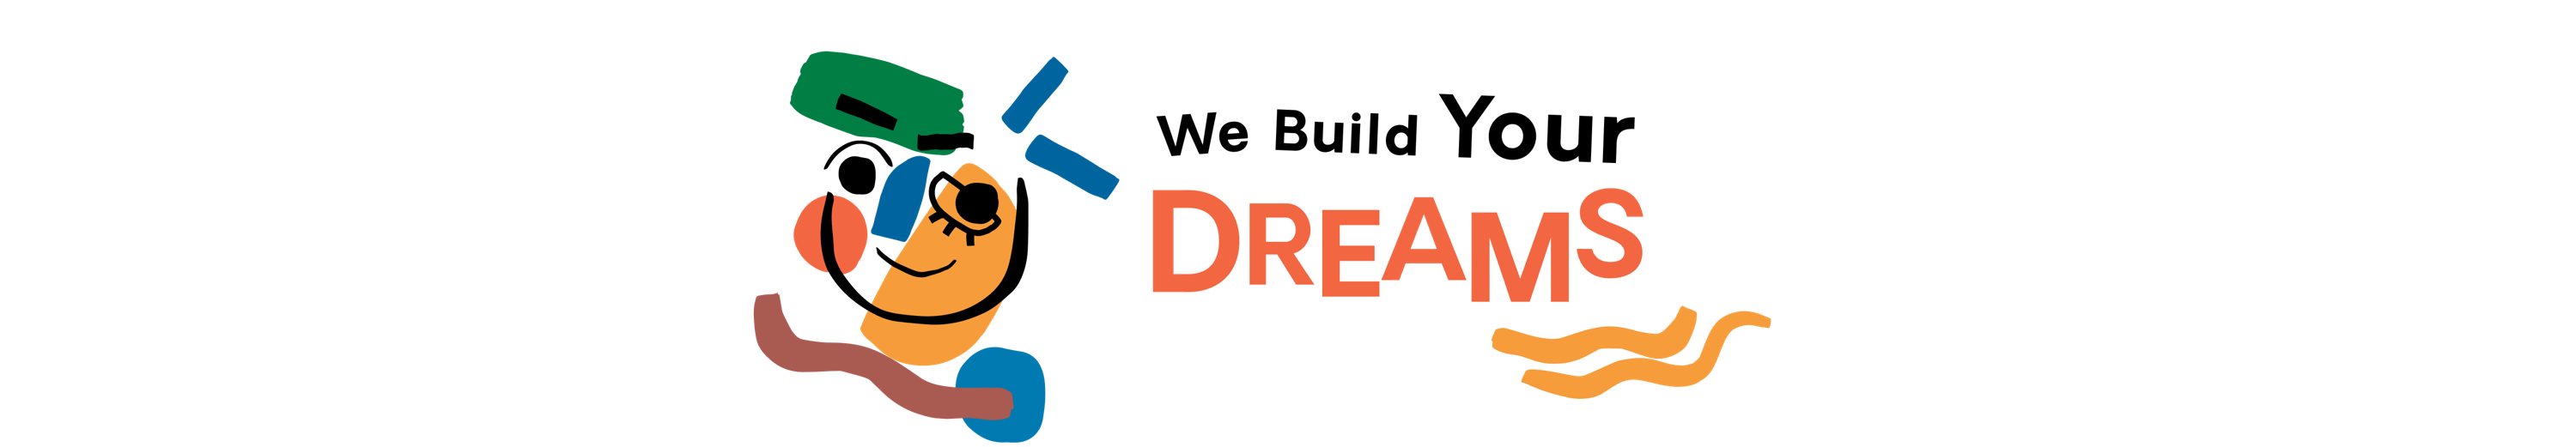 We build Your DREAMS